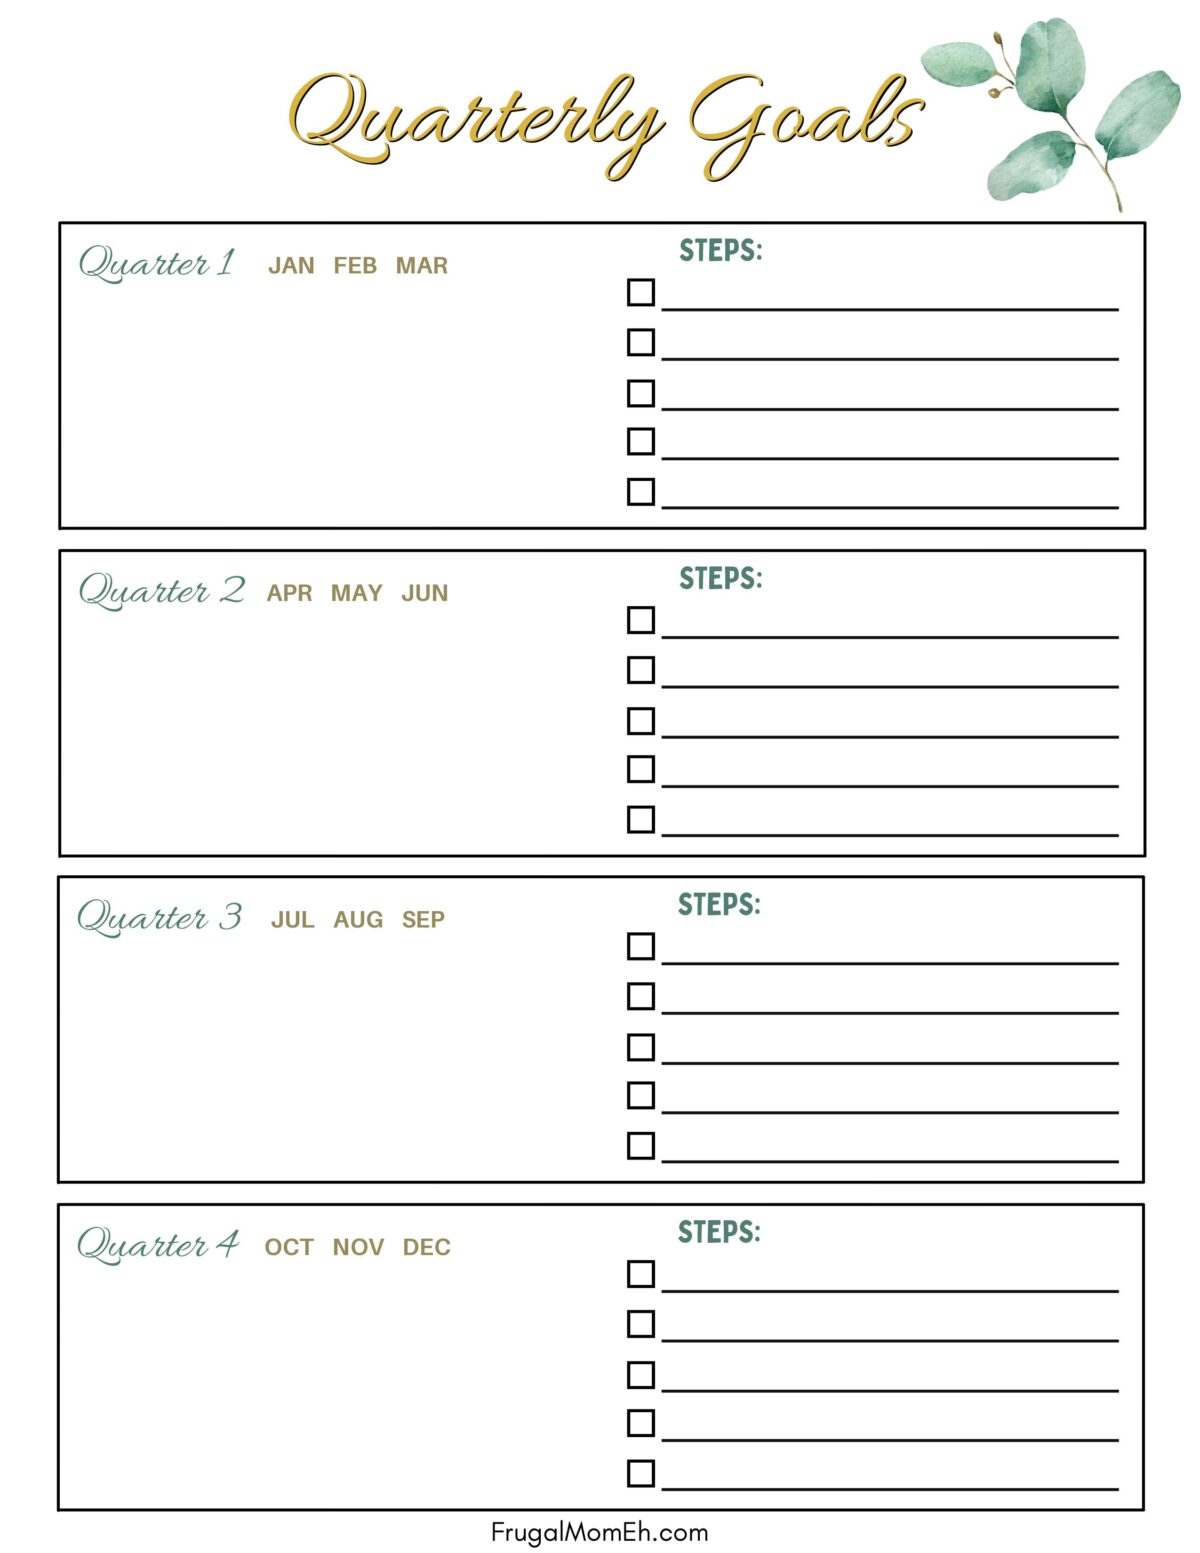 Quarterly Goals Planner Sheet